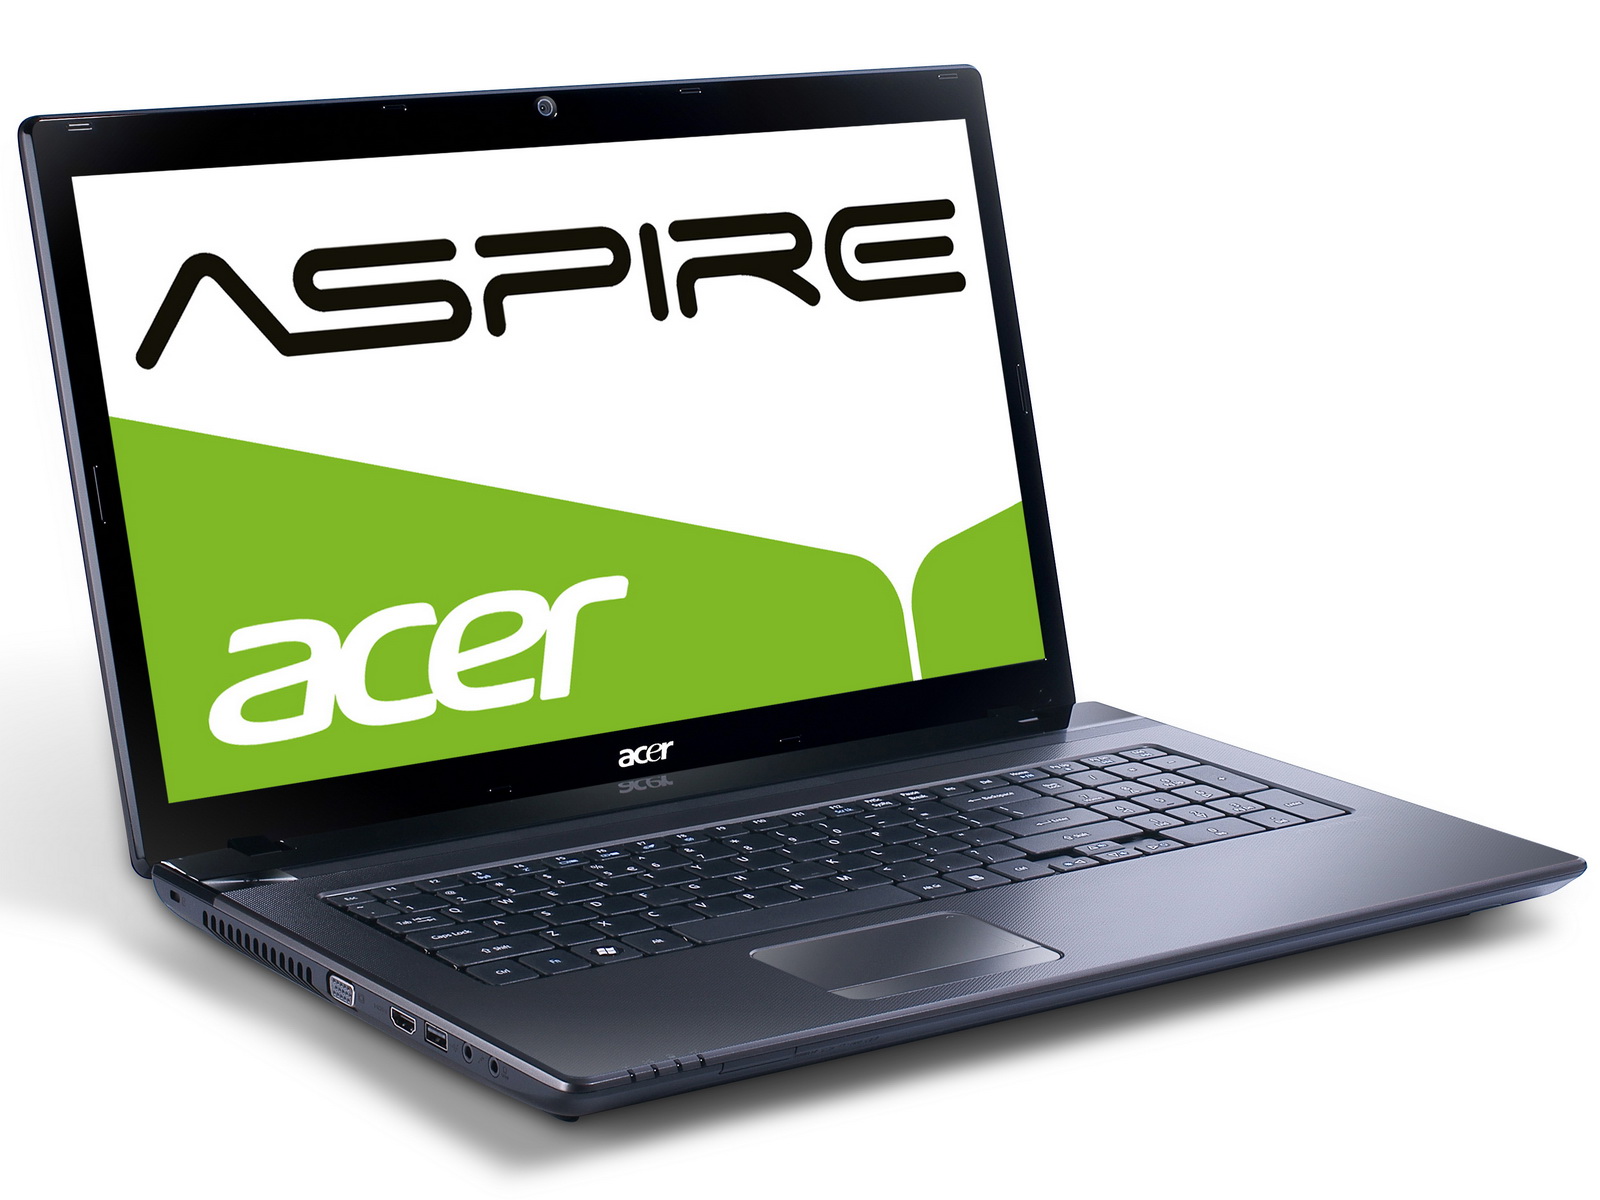 Ноутбук acer видит. Acer Aspire 5560g-4054g50mnkk. Acer Aspire e1-570g. Acer Aspire 5560. Ноутбук Acer Aspire 5560g.